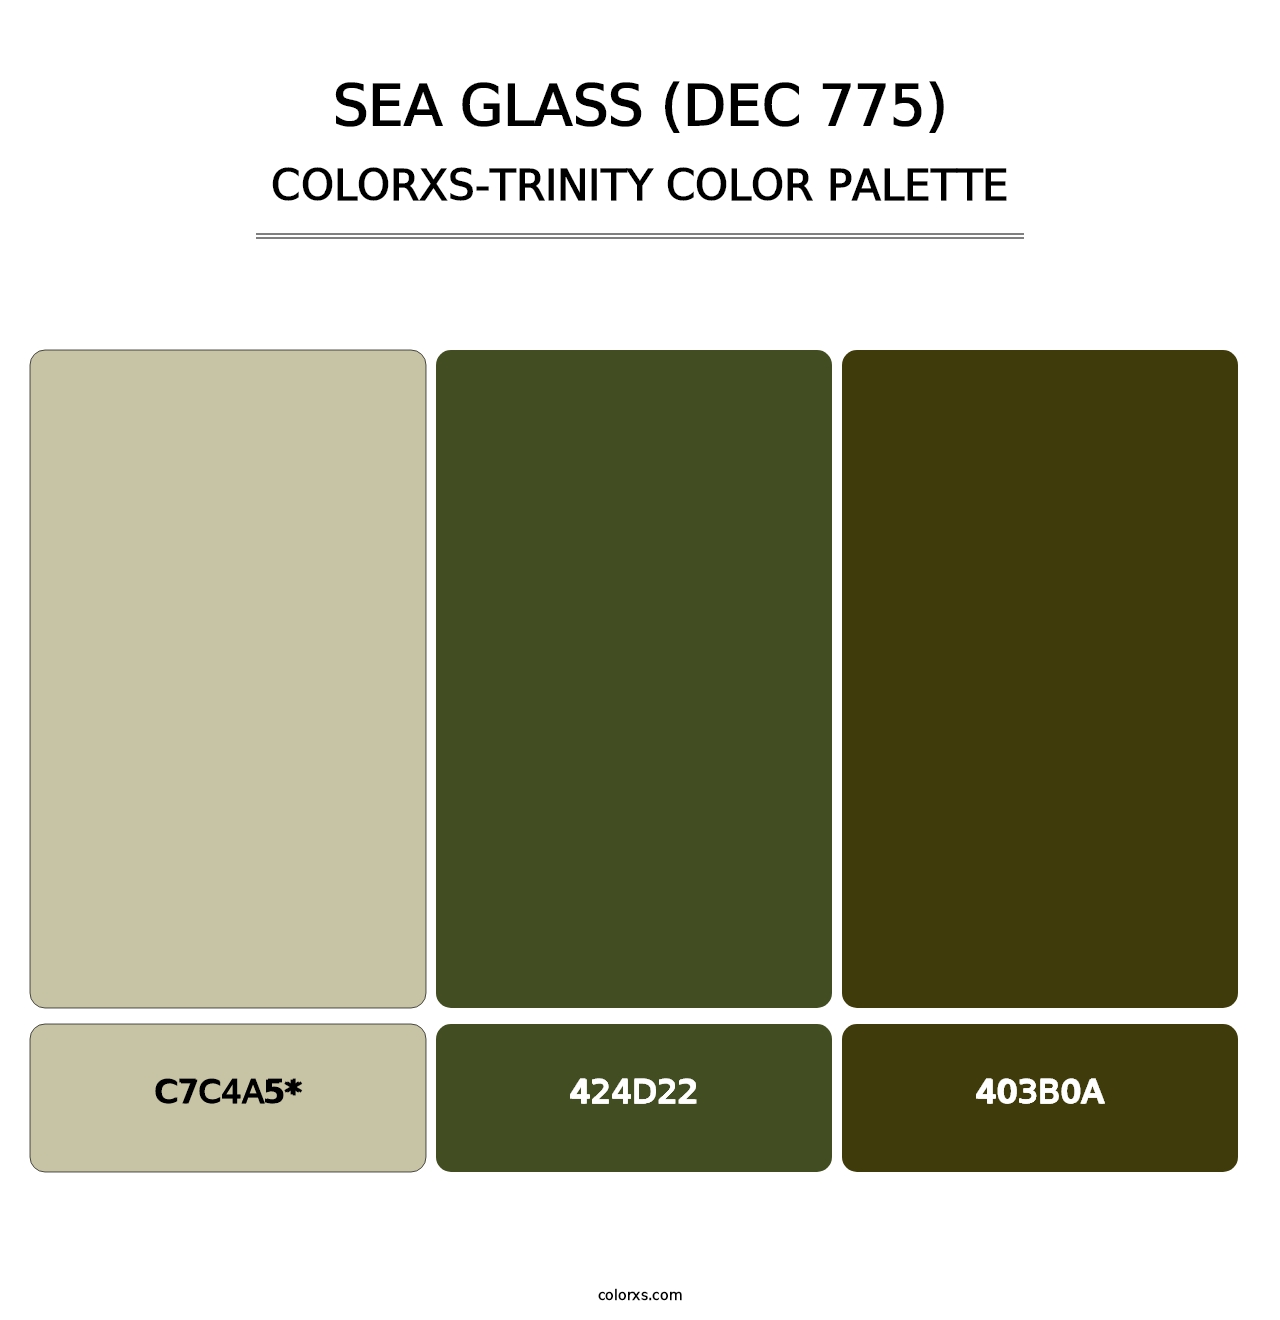 Sea Glass (DEC 775) - Colorxs Trinity Palette